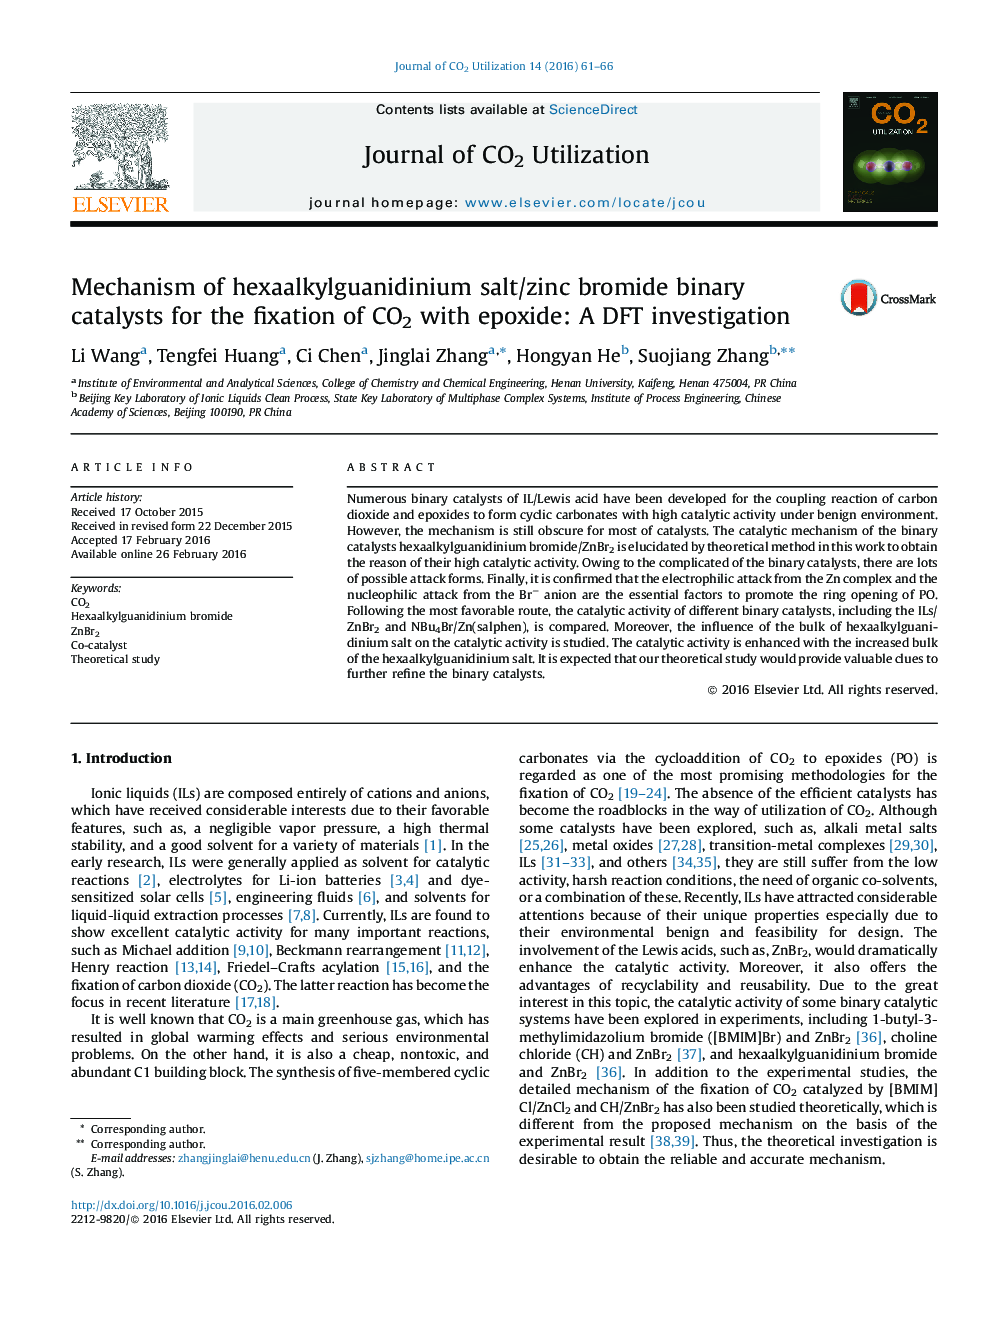 مکانیسم کاتالیزور باینری برمید نمک/روی hexaalkylguanidinium برای تثبیت CO2 با اپوکسید: مطالعه DFT